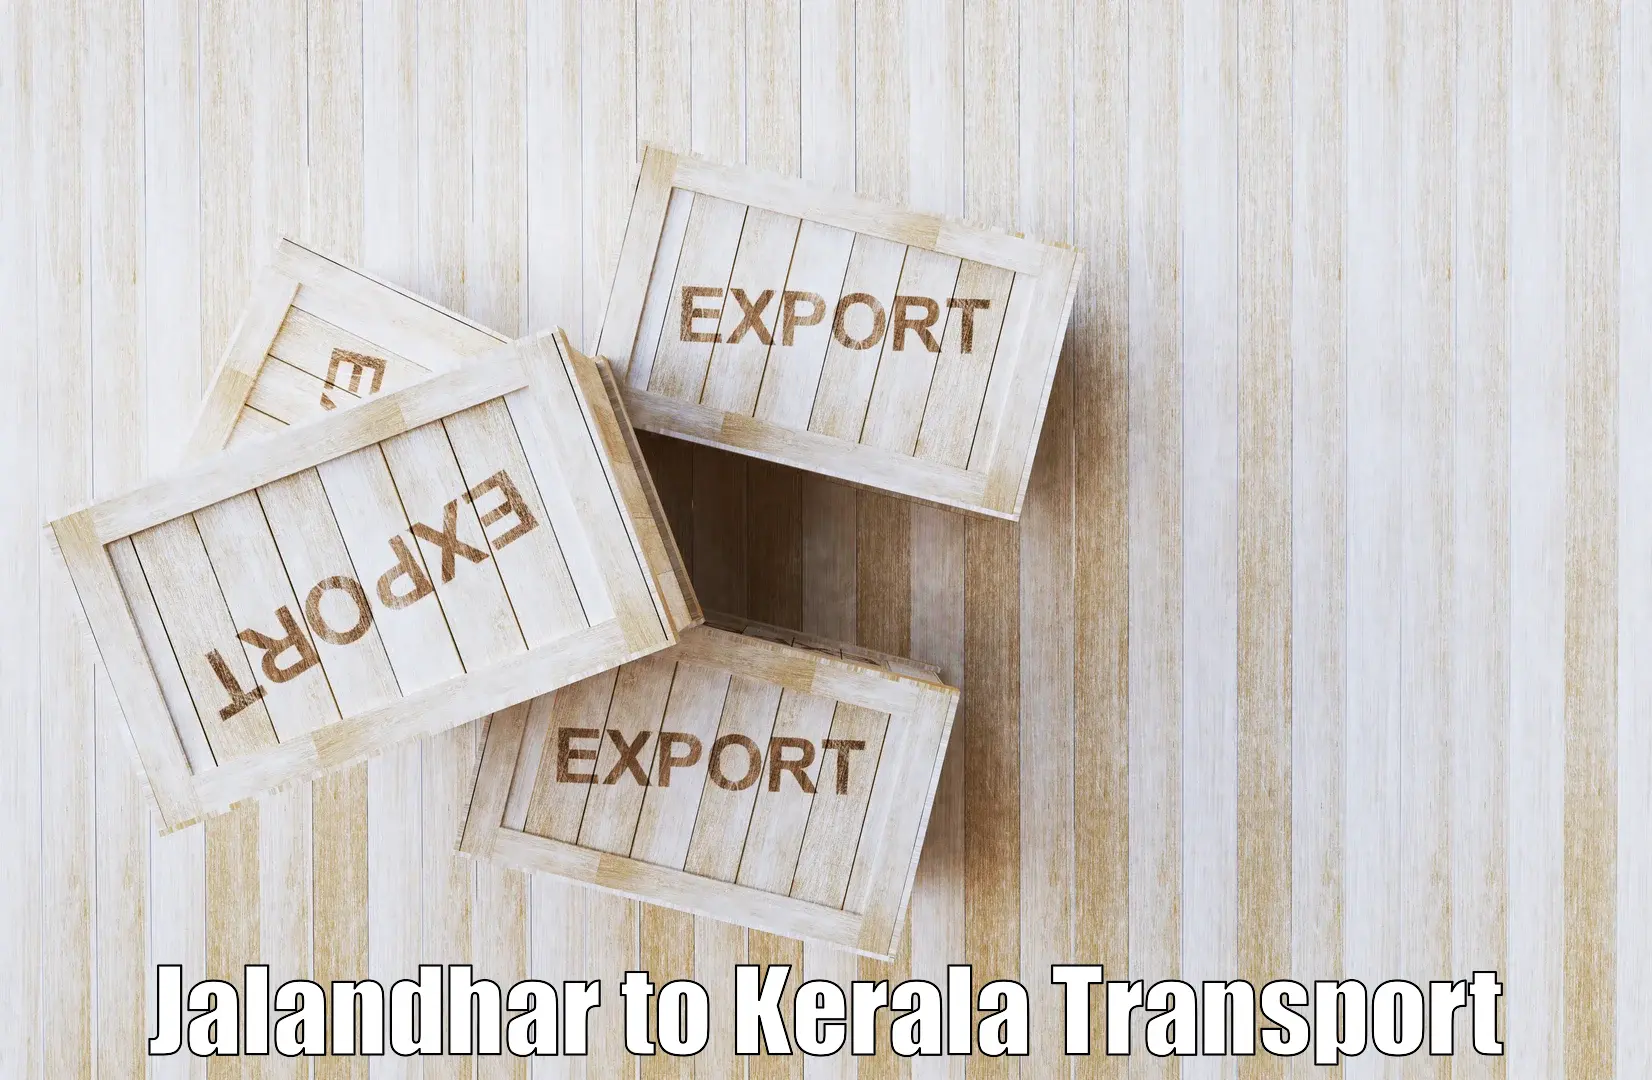 Goods transport services Jalandhar to Rajamudy